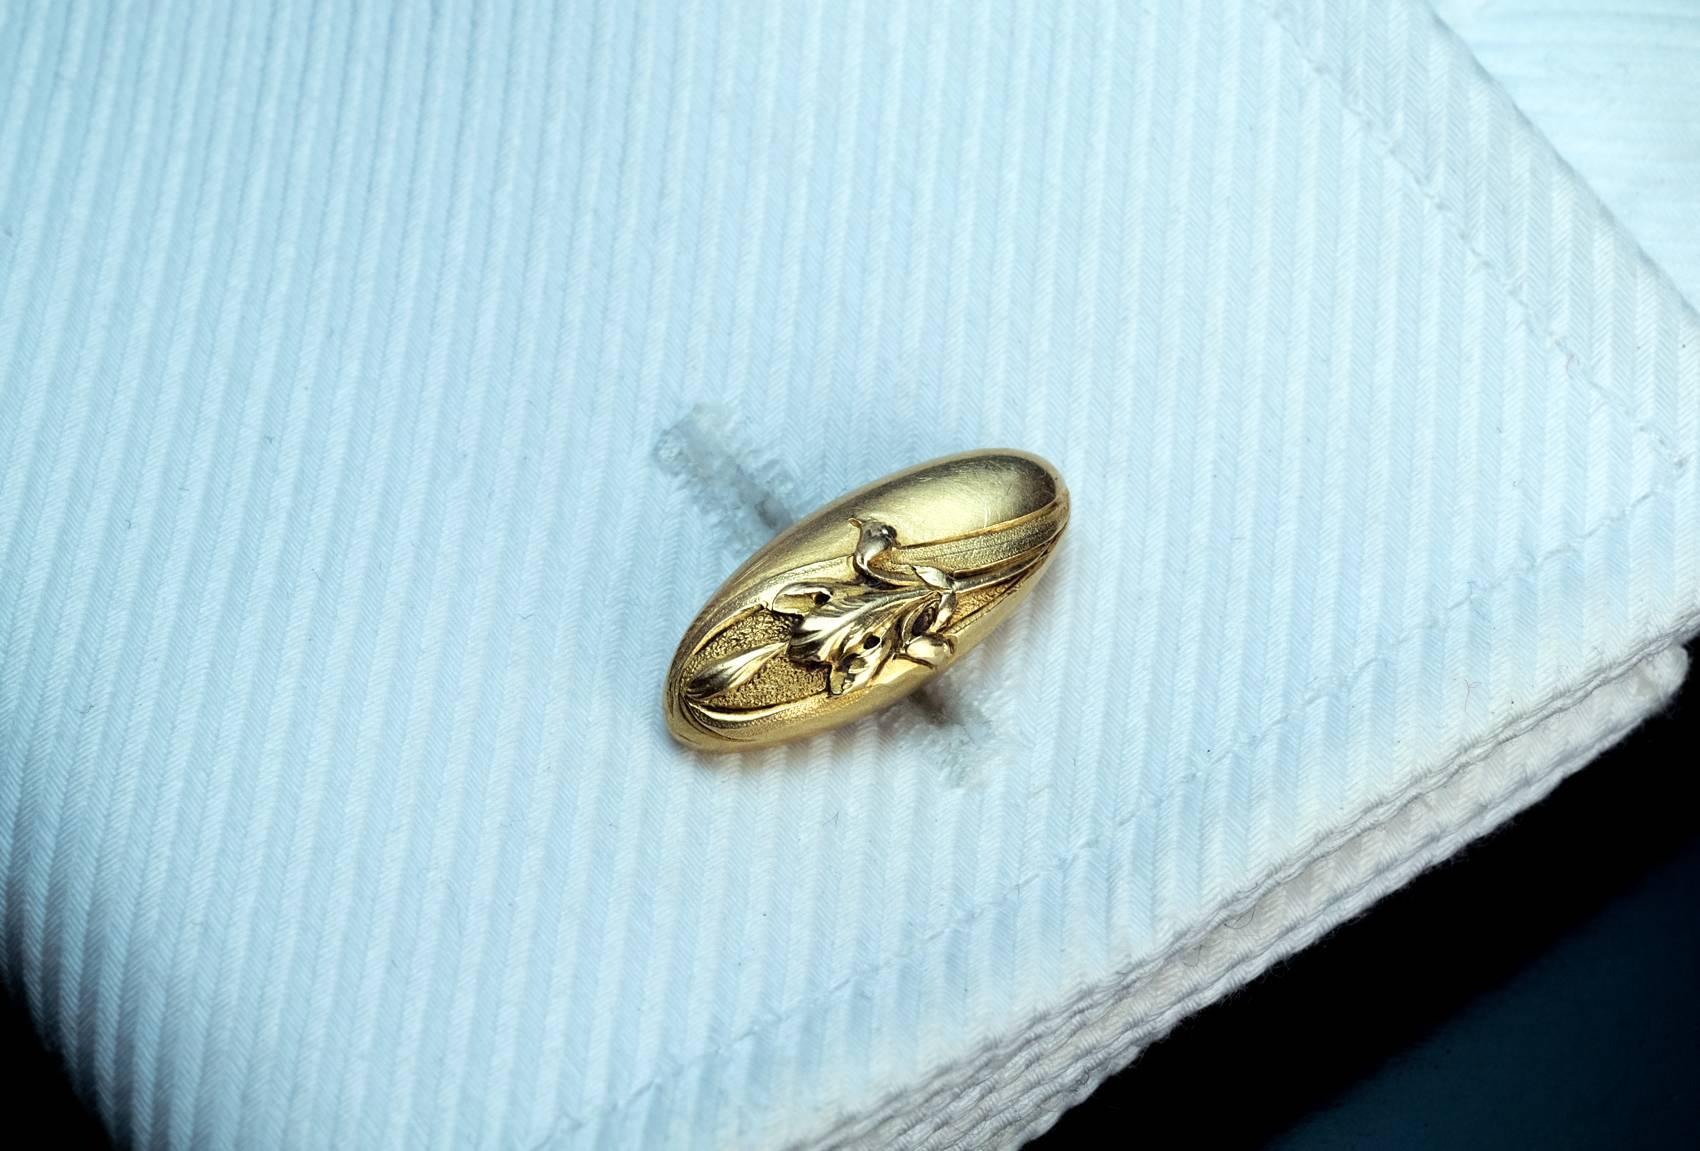 Les boutons de manchette en or jaune 18 carats sont ciselés d'un motif floral Art nouveau.

Marqué de la marque d'exportation française en forme de lièvre.

Largeur 19 mm (6/8 in.)